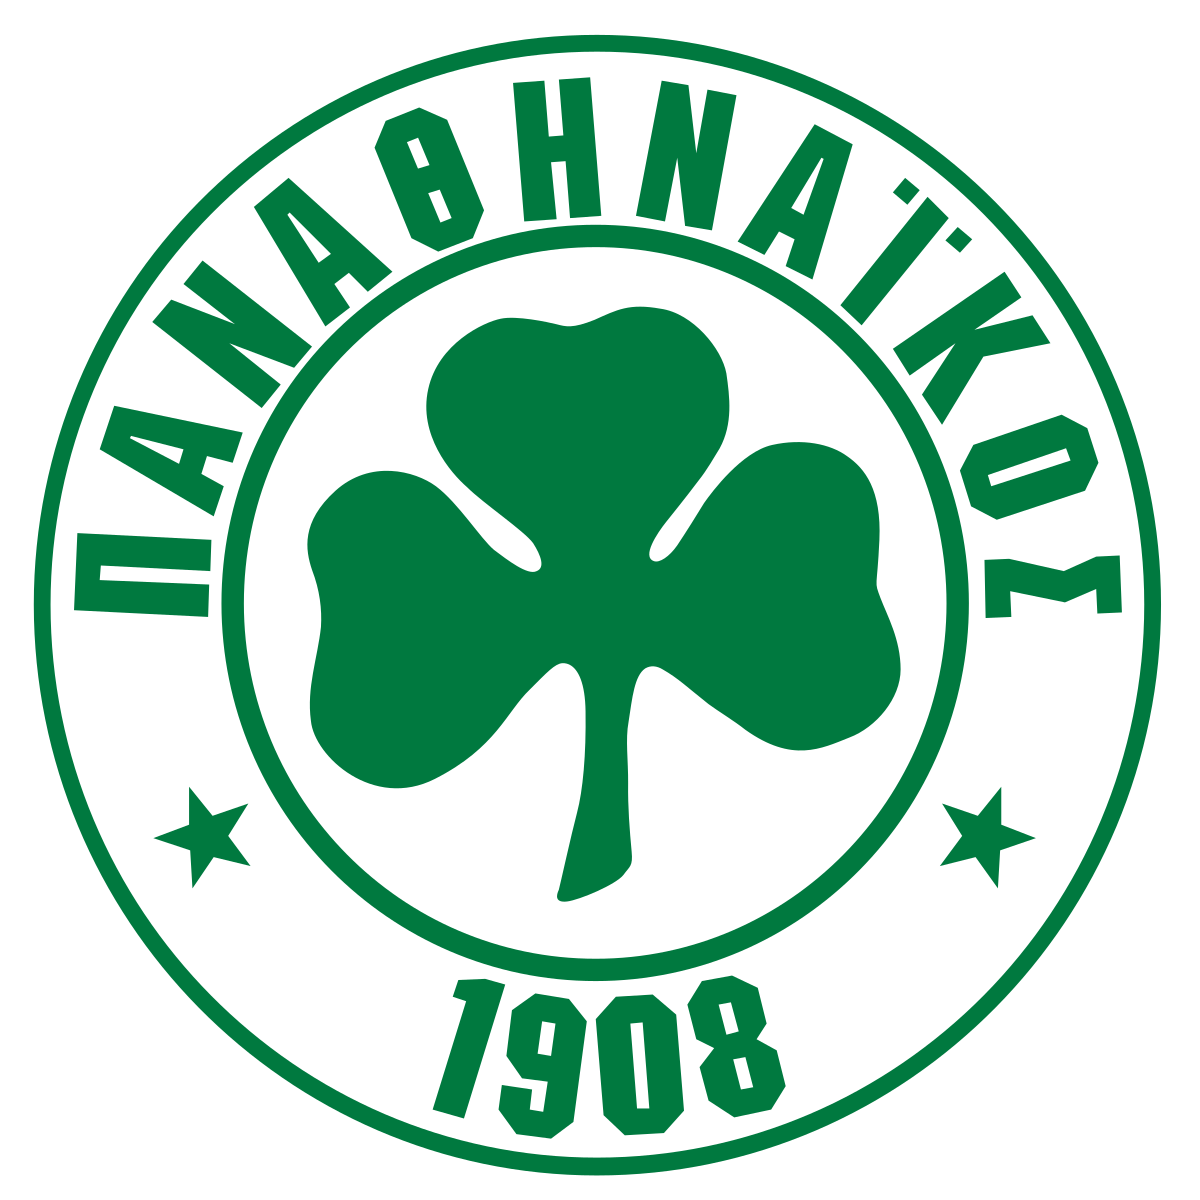 Equipo inscrito y validado para la Temporada 21/22 y que por ello ha sido premiado con 2 entradas para asistir en directo al partido de Baloncesto de Euroliga, entre el Baskonia y Panathinaikos.